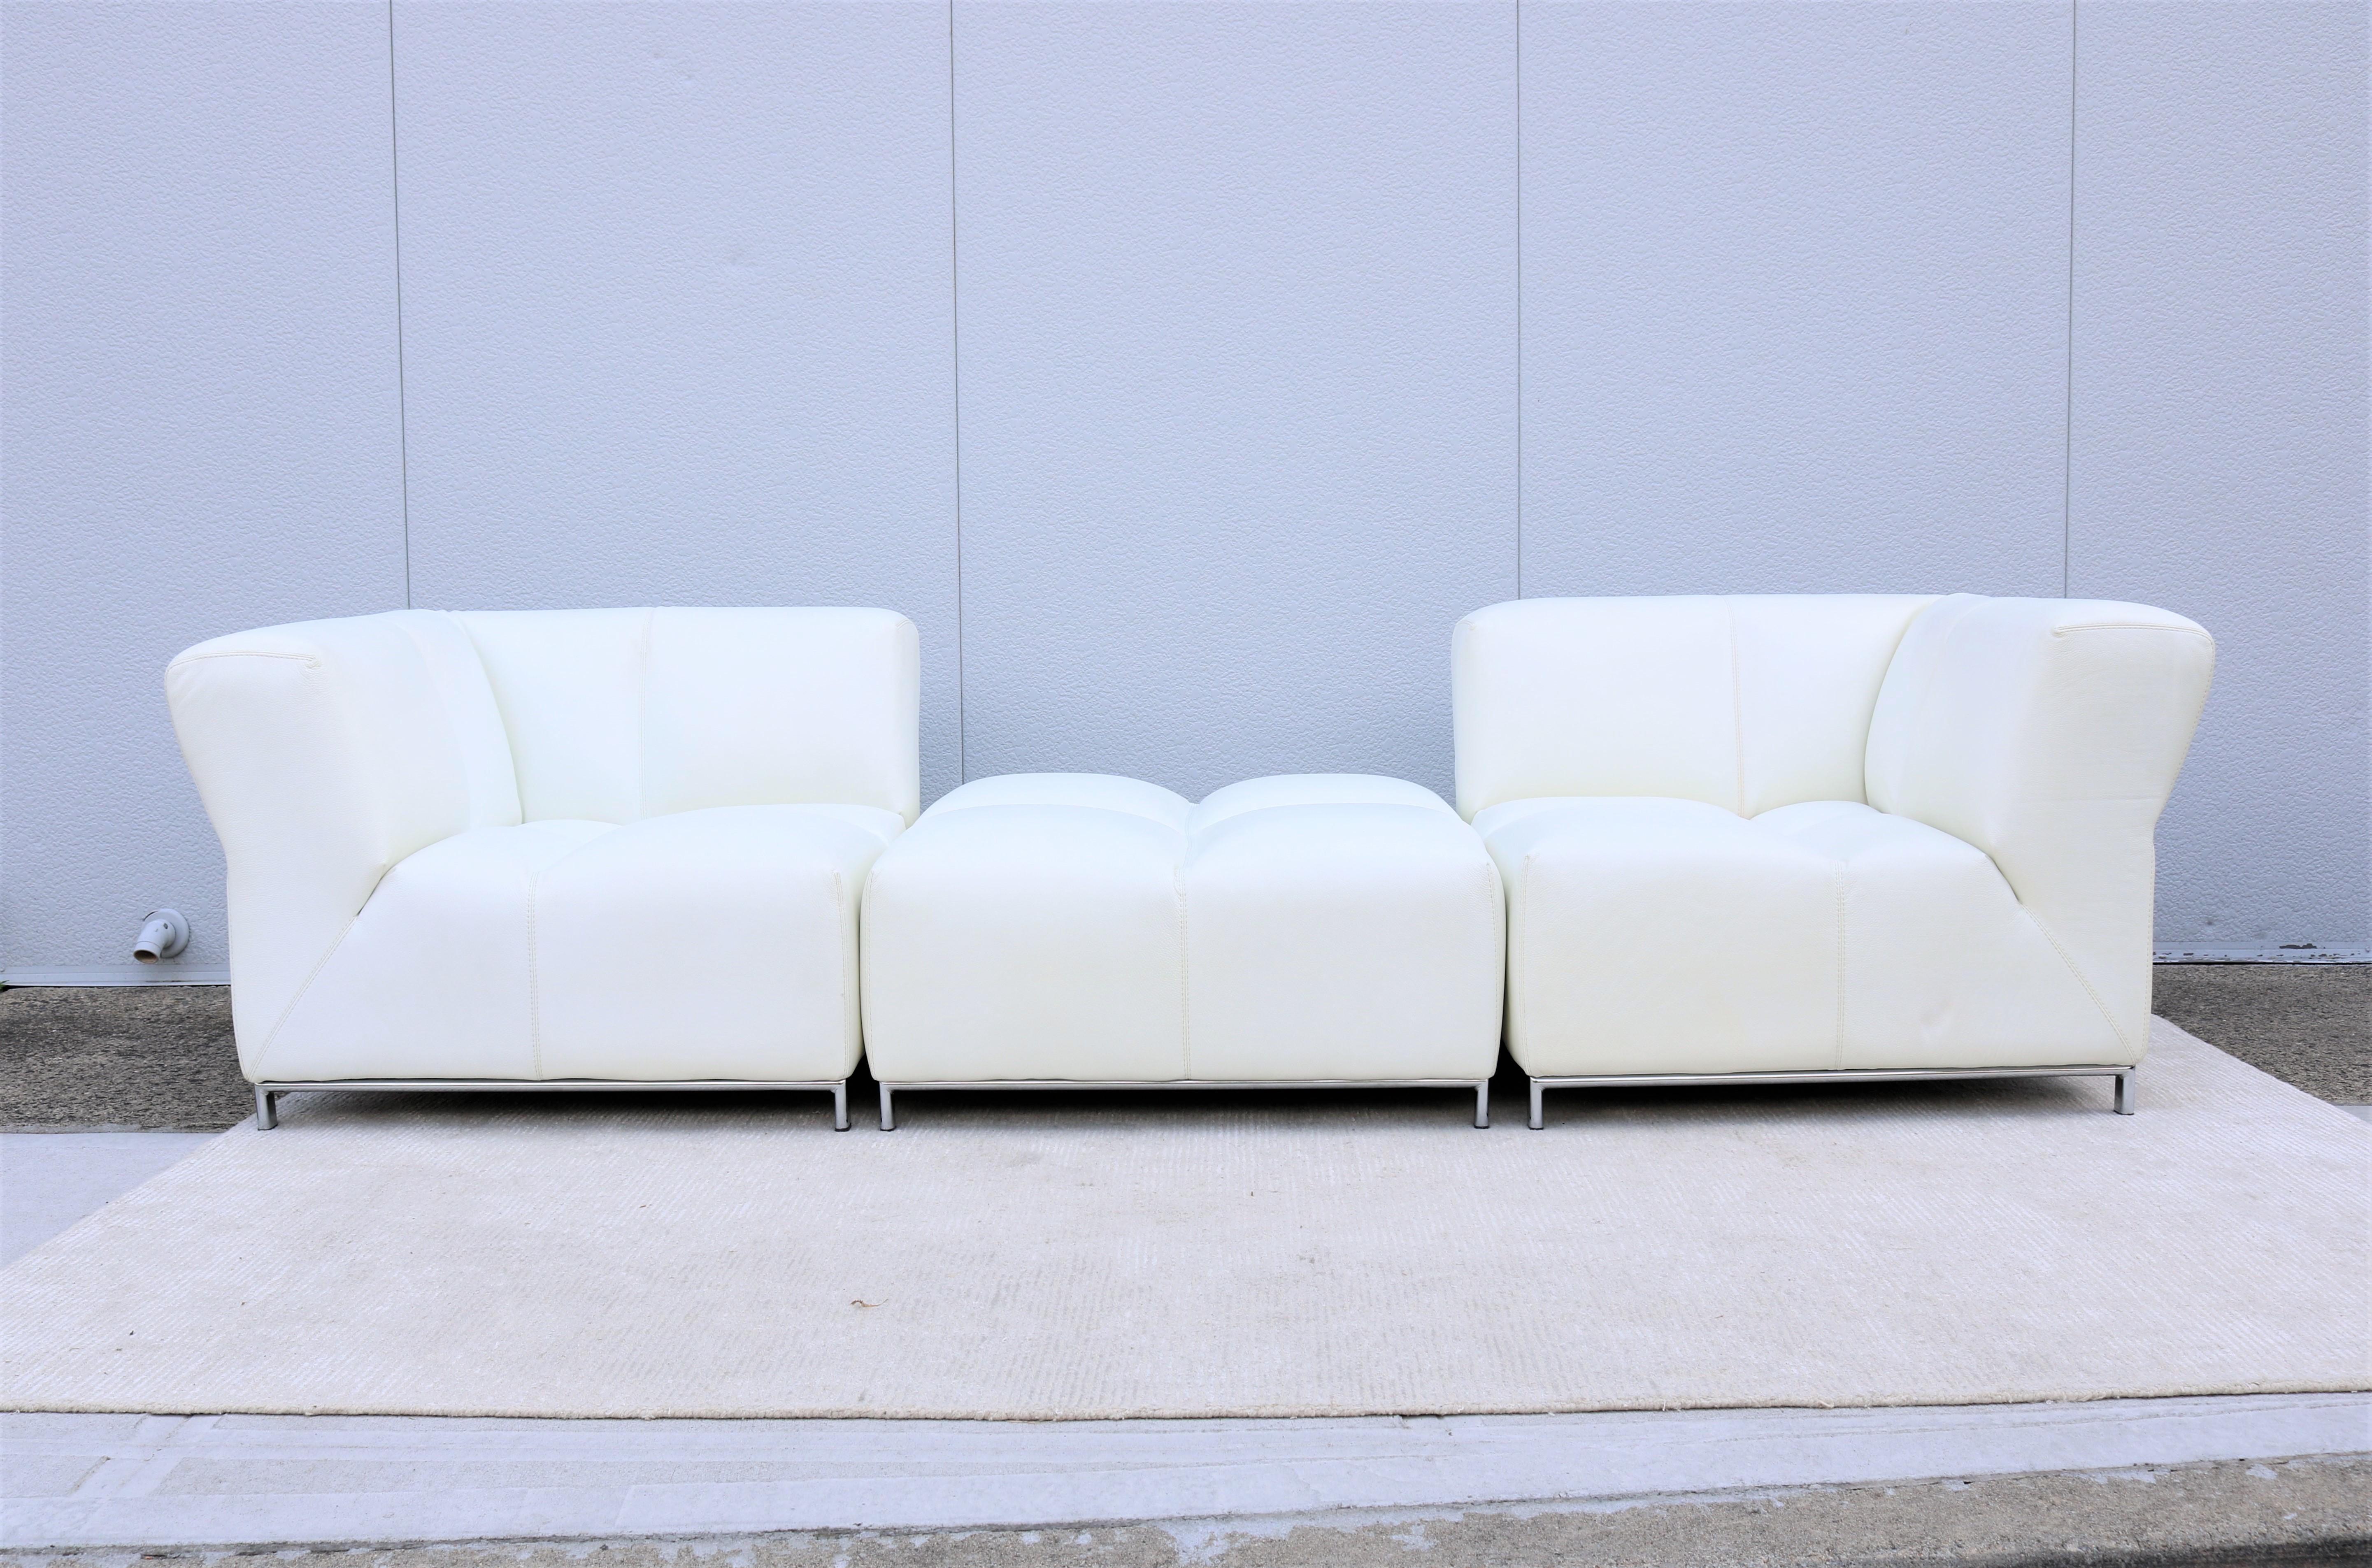 Elegant Modern Domino modular three pieces white leather sofa by Gamma Arredamenti.
Il se caractérise par un design moderne haut de gamme, un système de sièges modulaires, qui offre sans effort des niveaux de confort suprêmes et une véritable